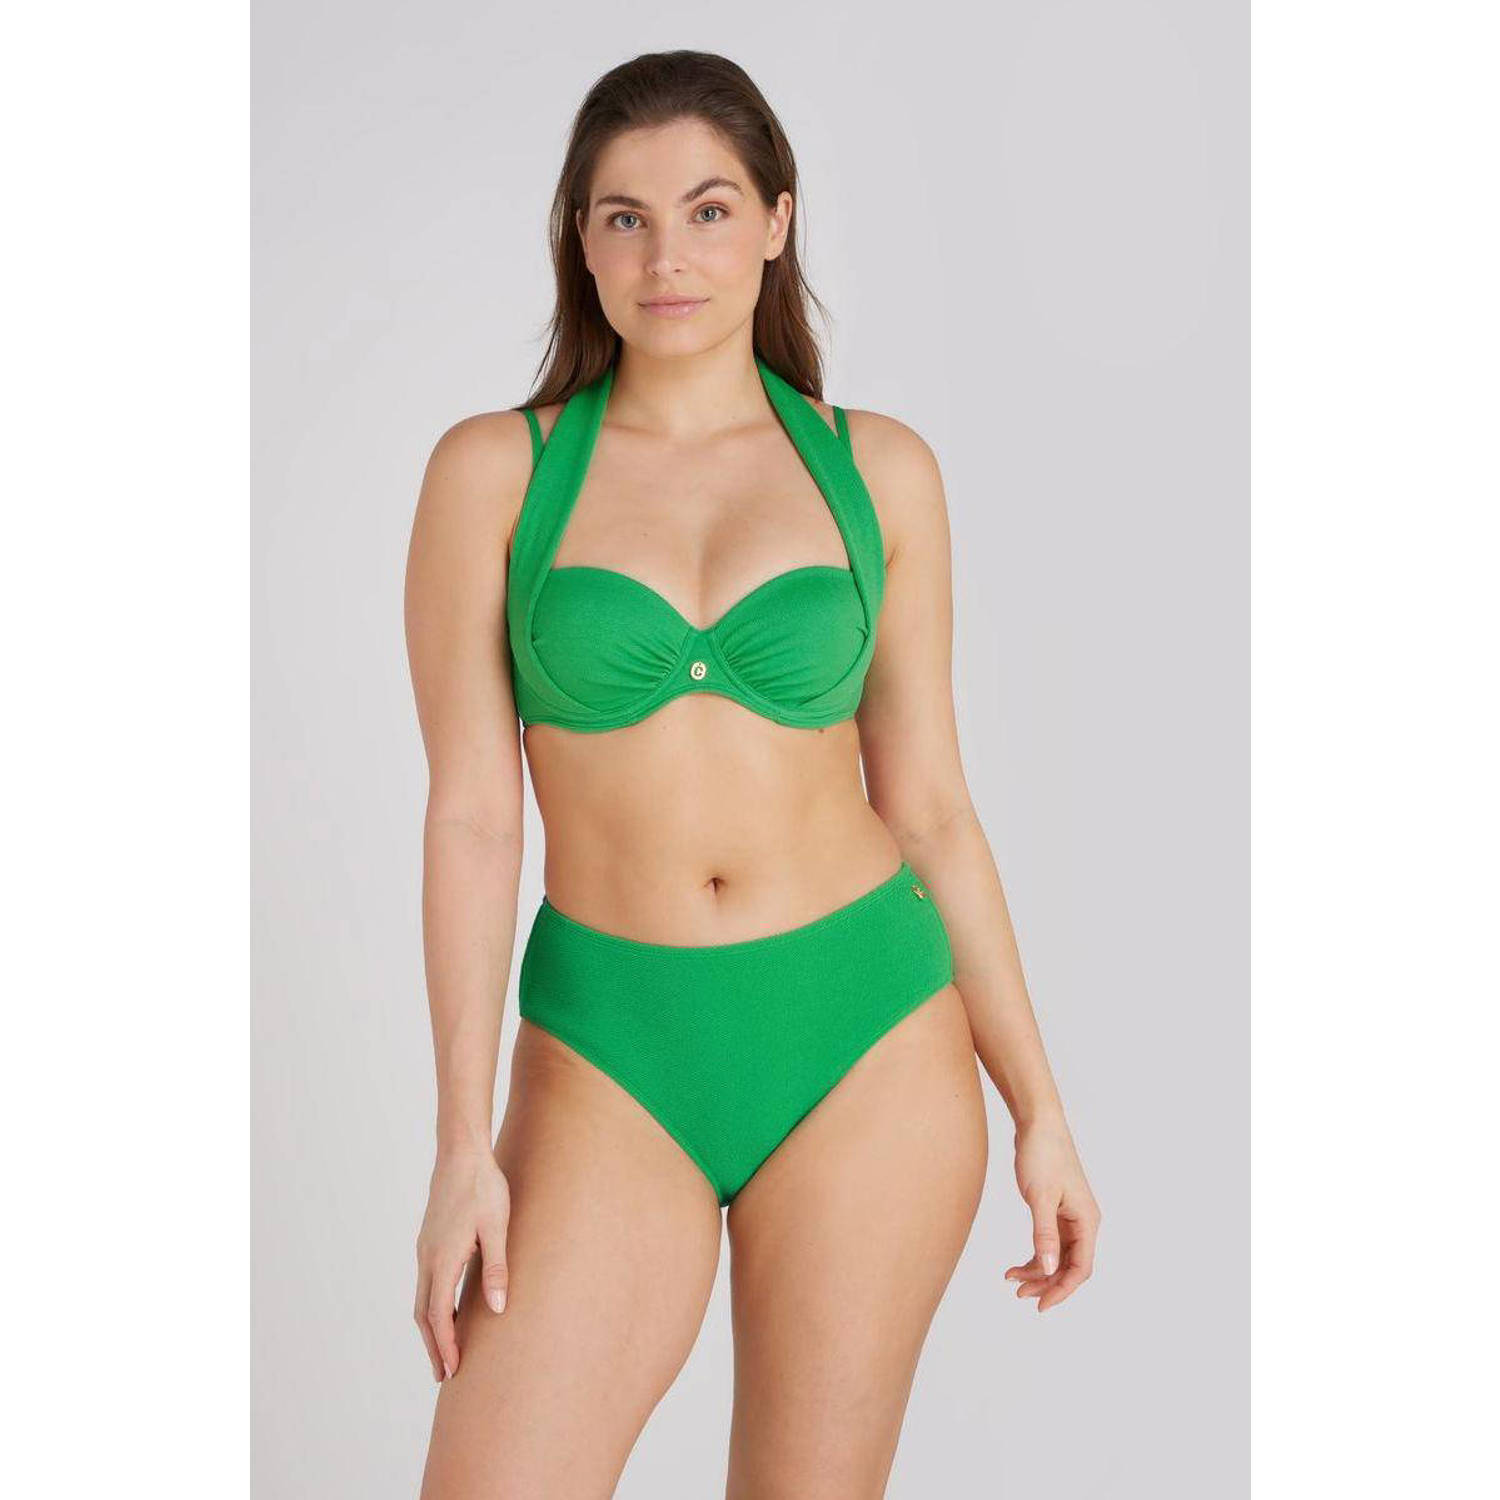 ten Cate Beach TC WOW voorgevormde beugel bikinitop met textuur groen